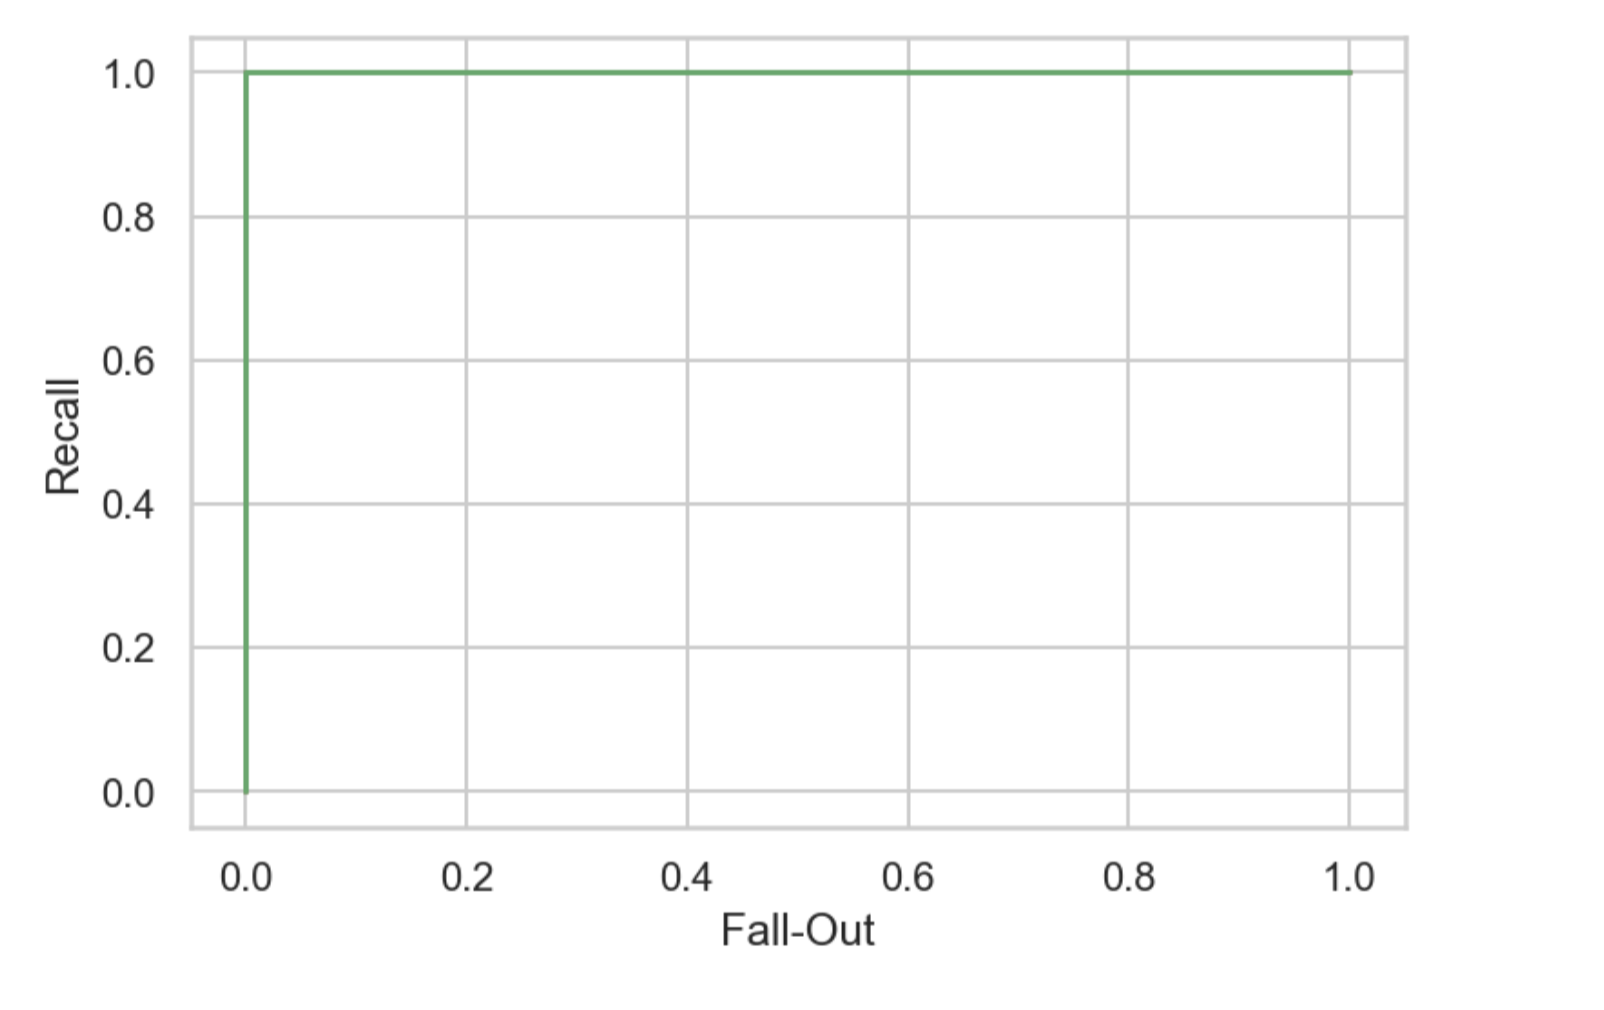 iris test data에 대한 QDA ROC curve